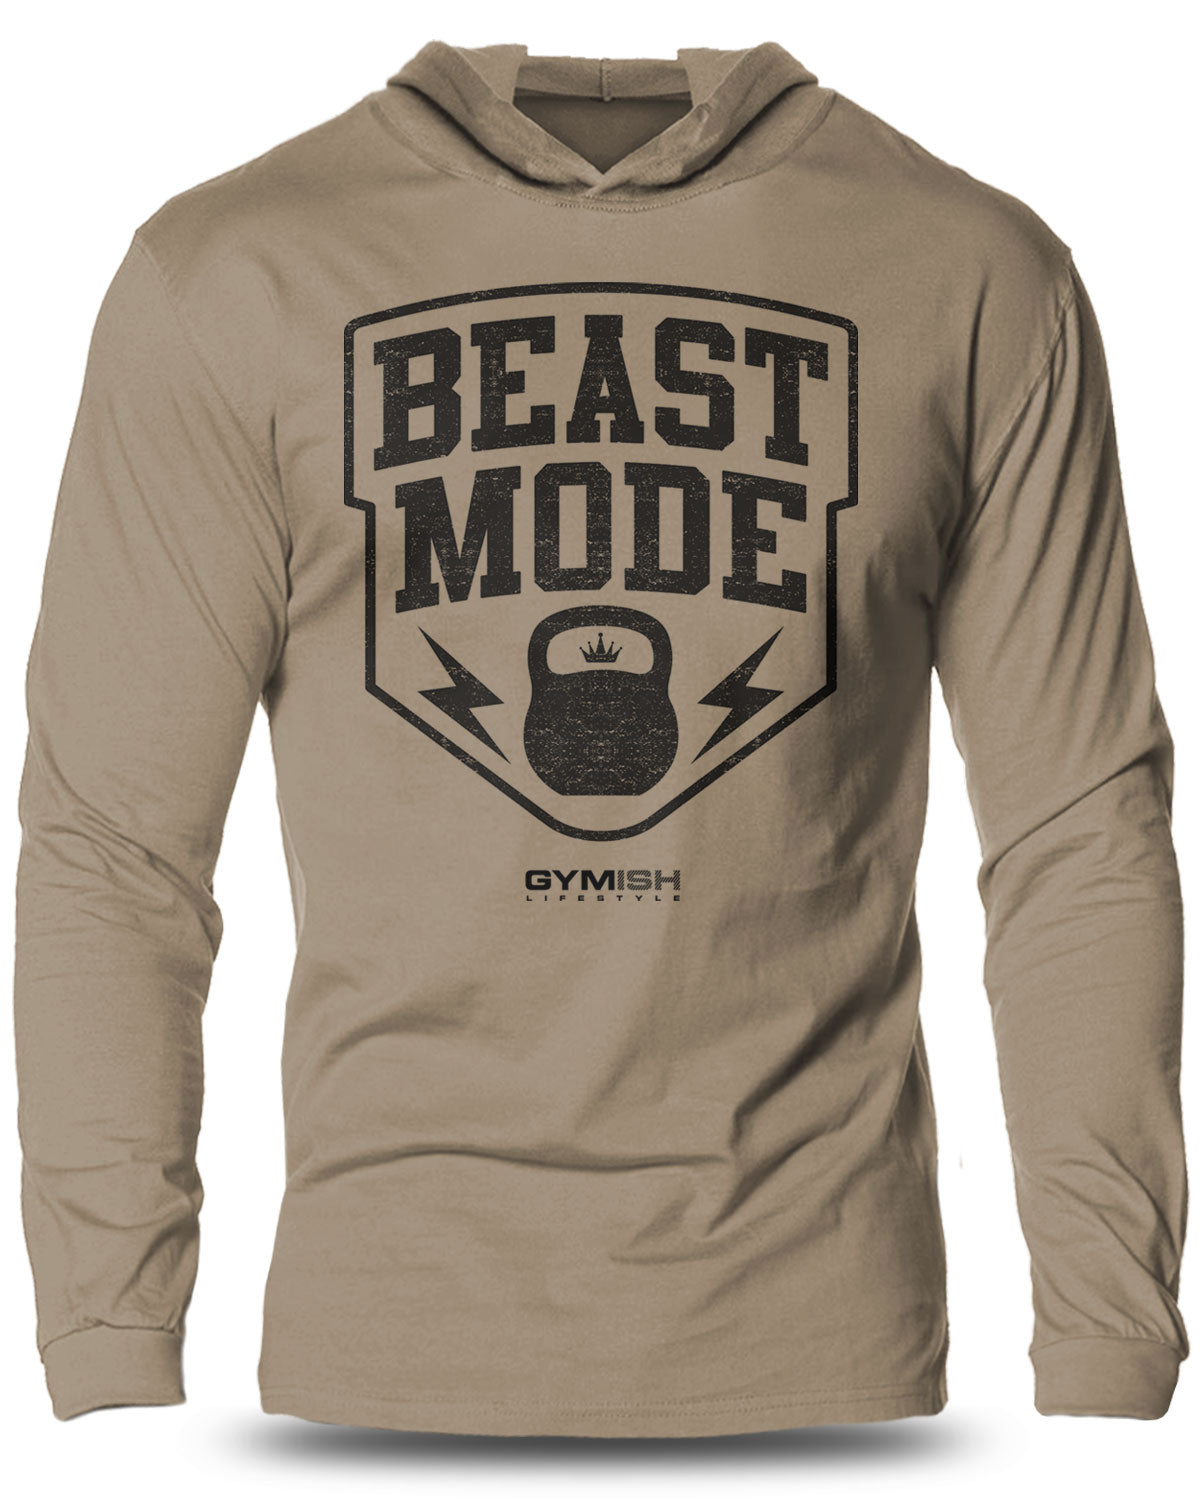 007-Beast Mode Lightweight Long Sleeve Hooded T-shirt for Men